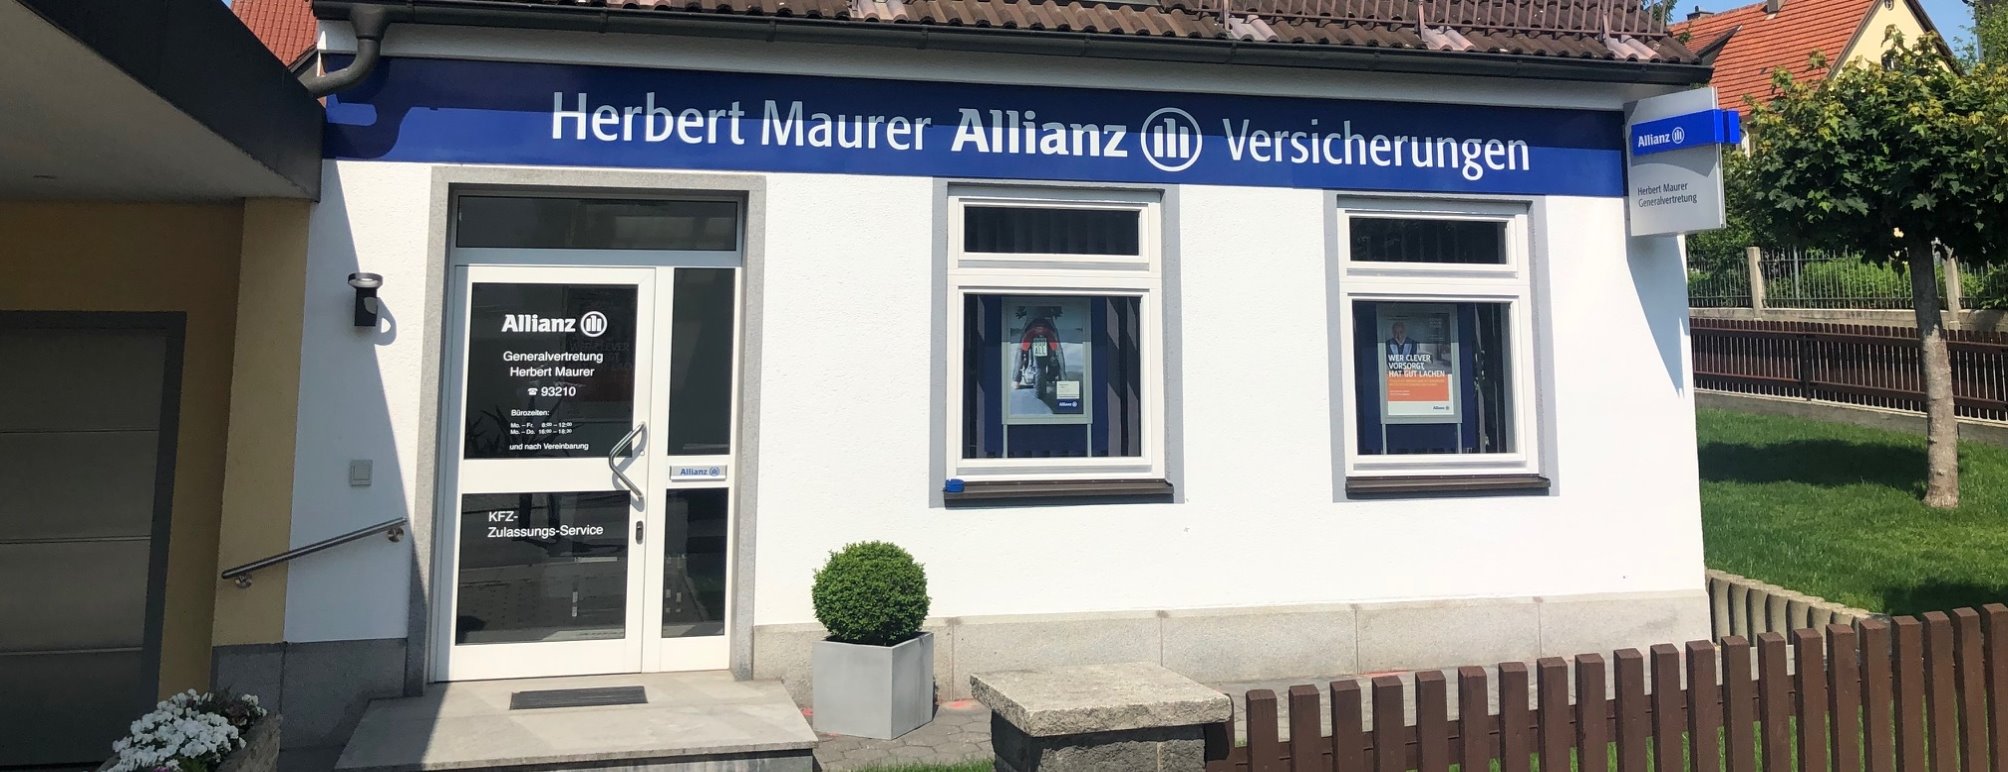 Allianz Versicherung Herbert Maurer e.K. Odelzhausen - Agentur von Außen 2019